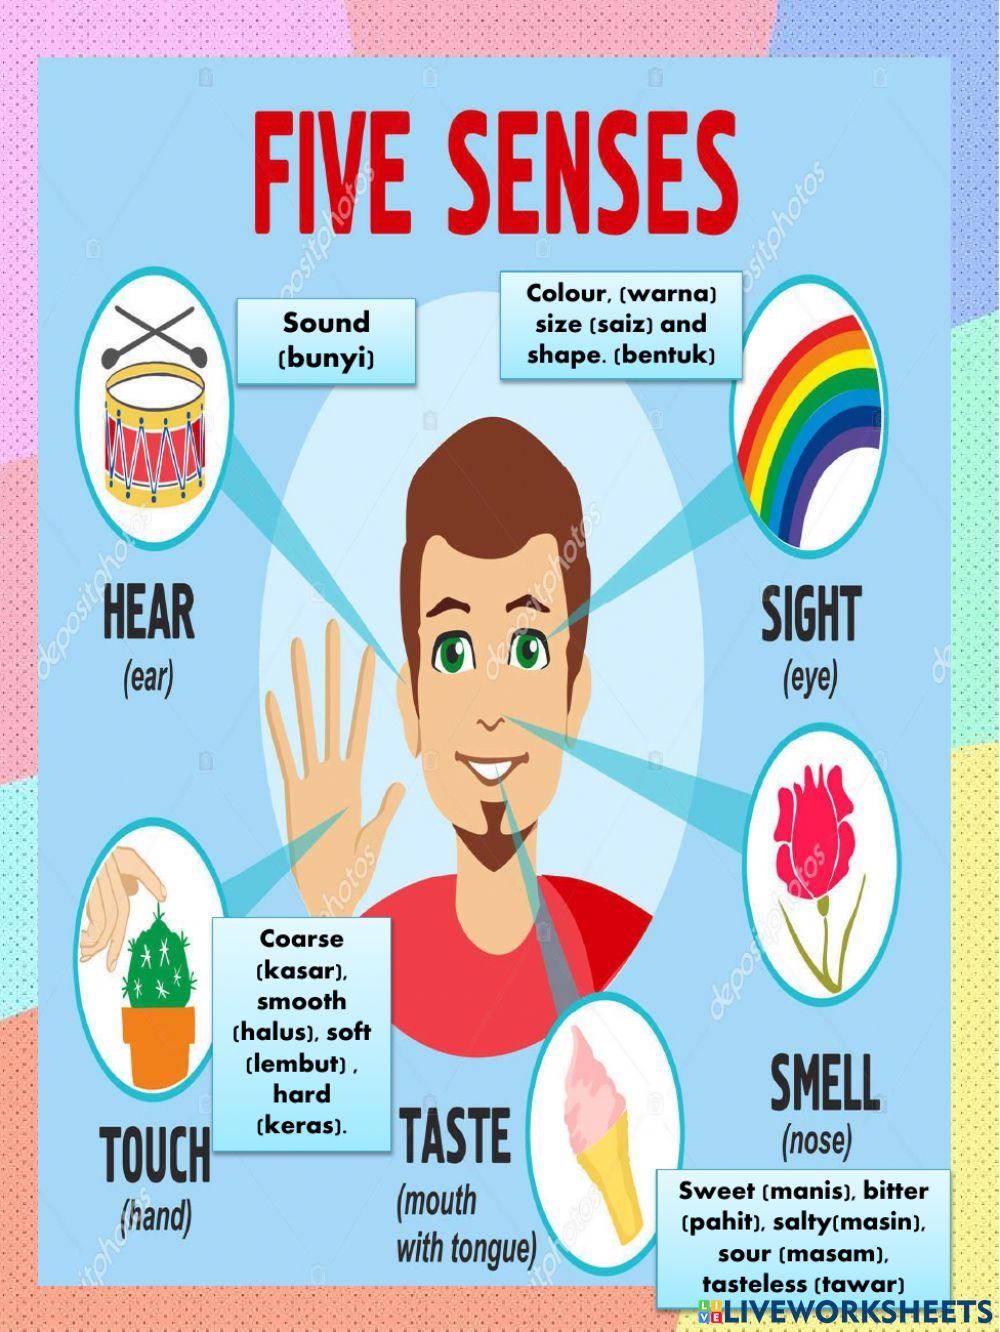 Human senses